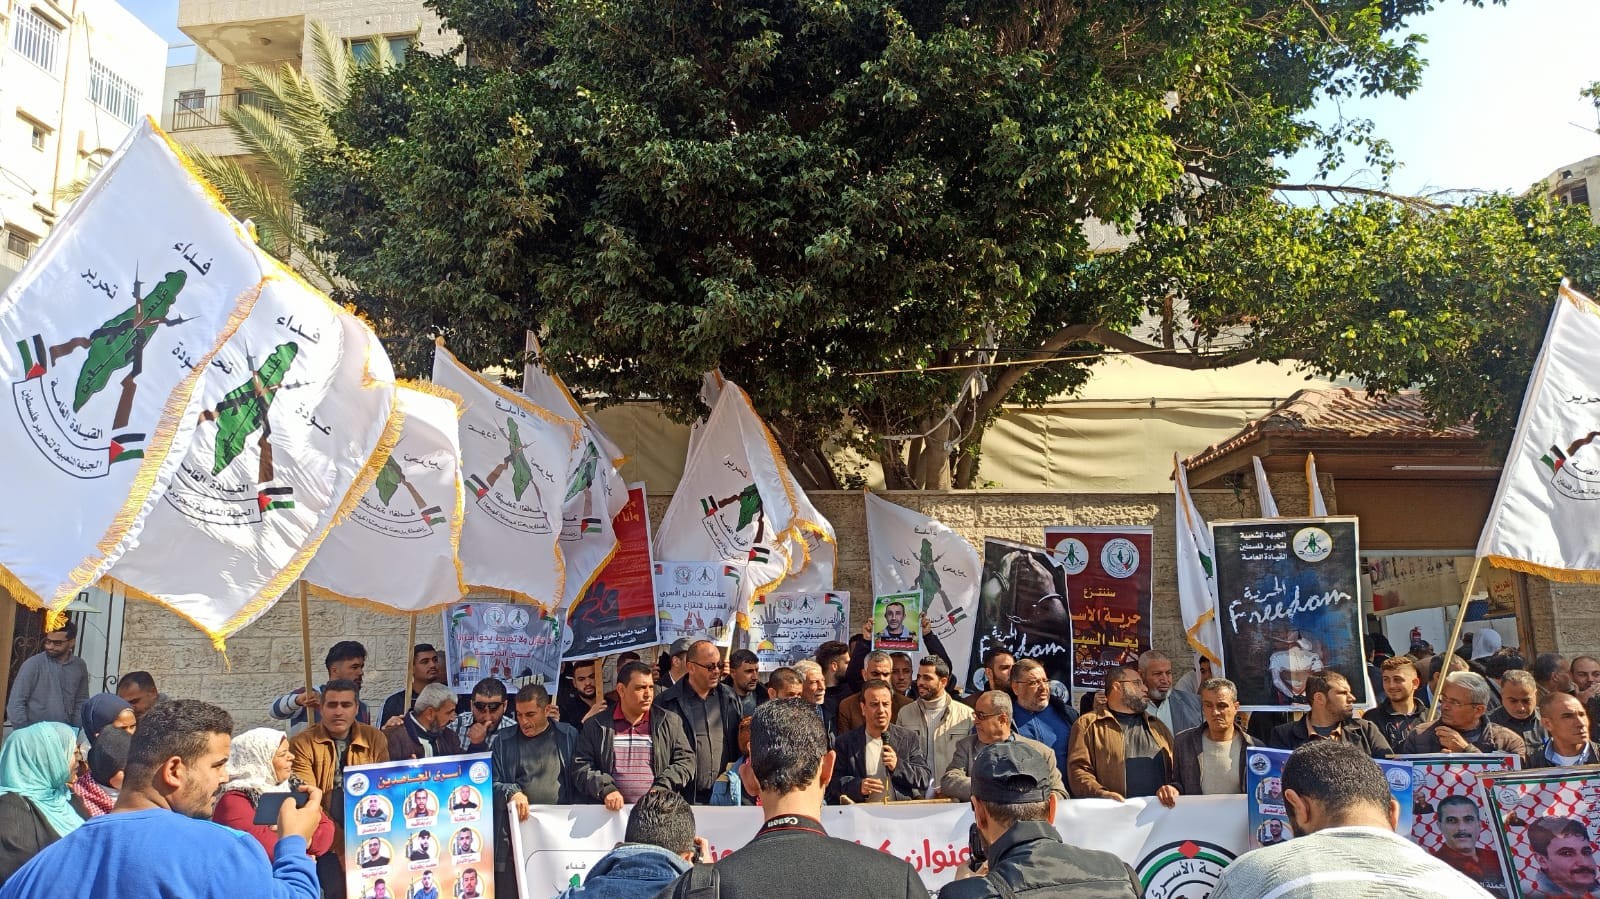 شاهد: الجبهة الشعبية "القيادة العامة" تُنظم وقفة دعم للأسرى أمام مقر الصليب الأحمر بغزّة